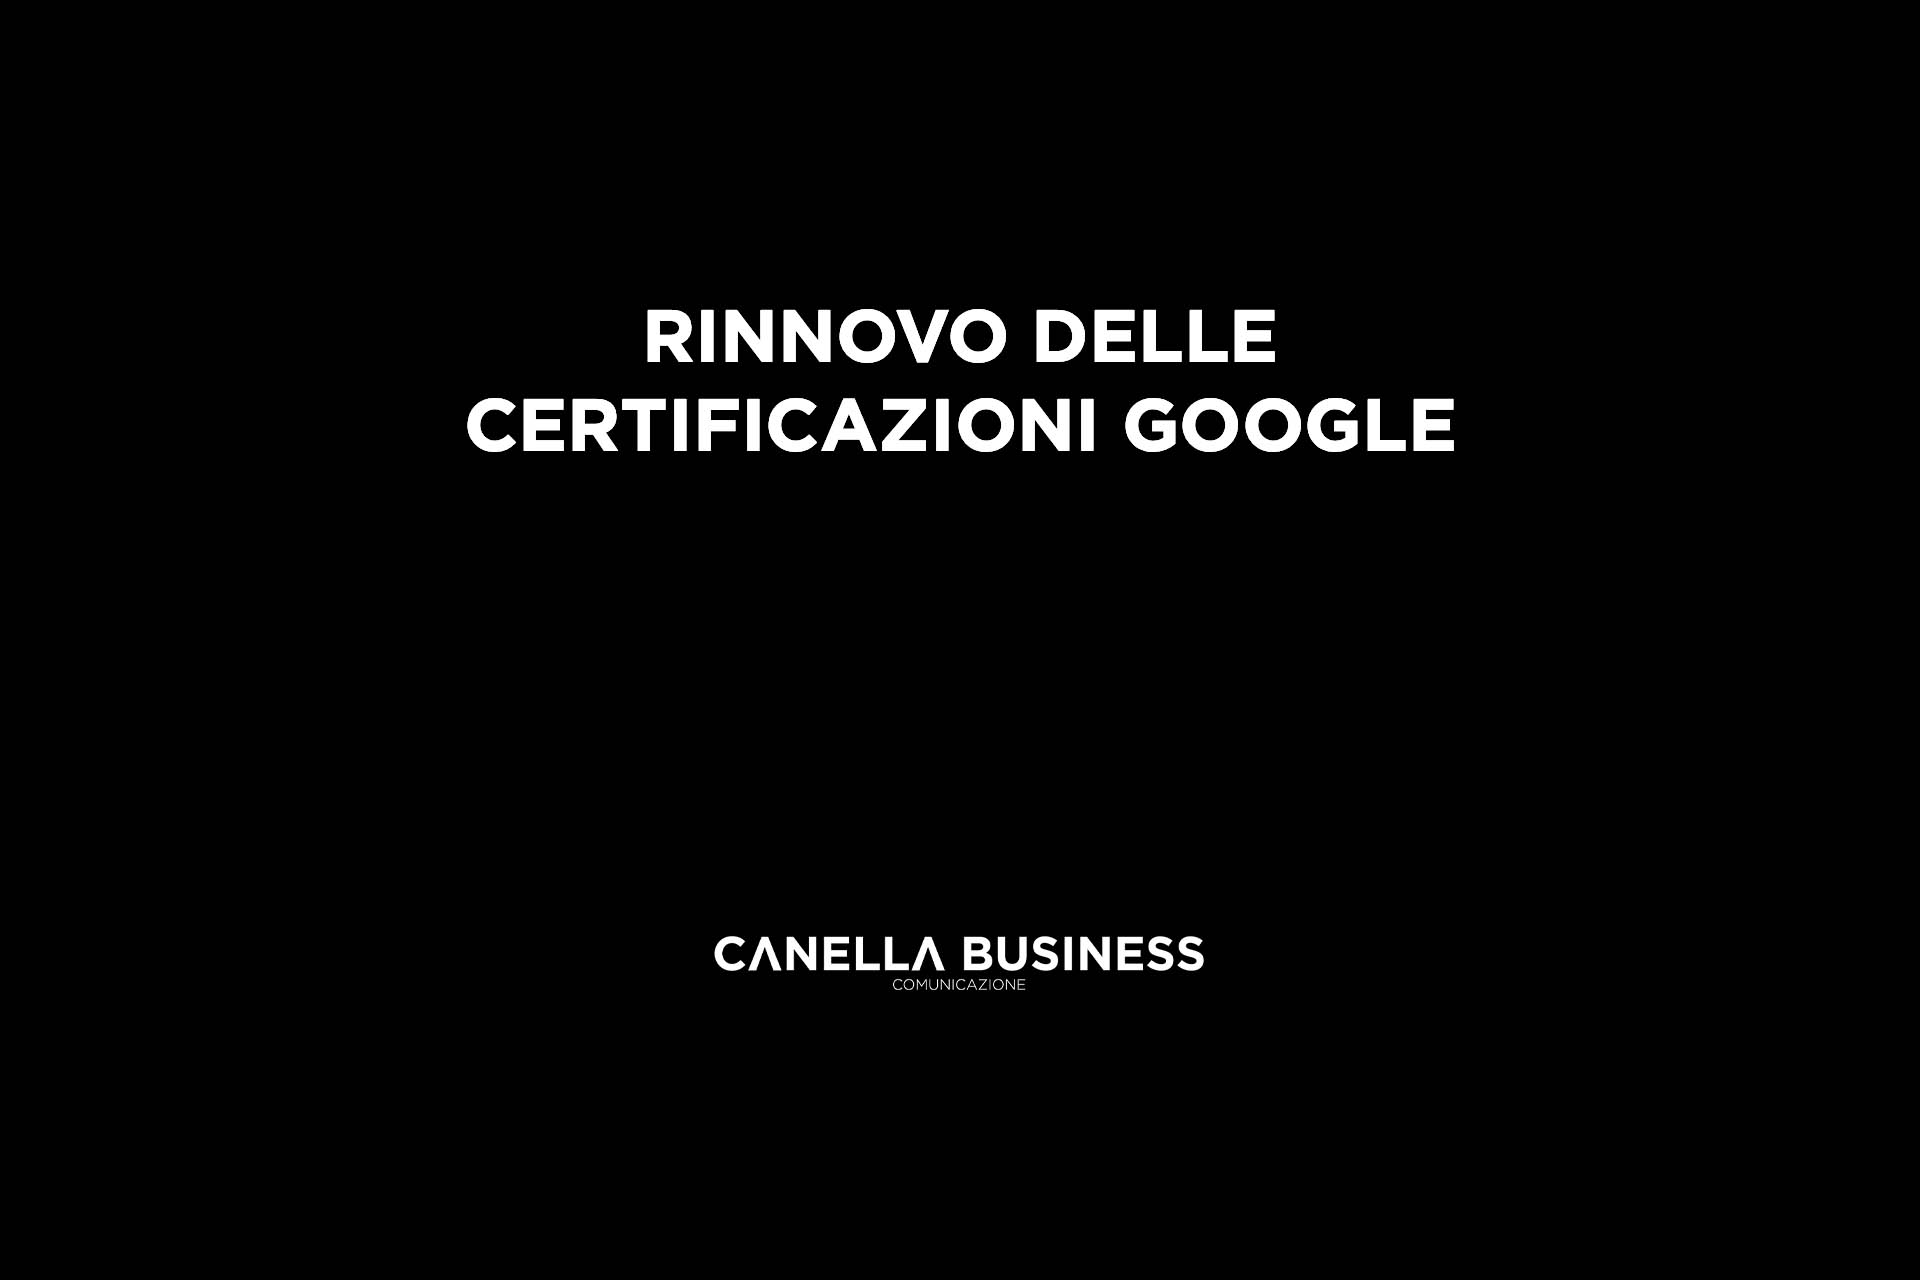 Rinnovo delle certificazioni Google